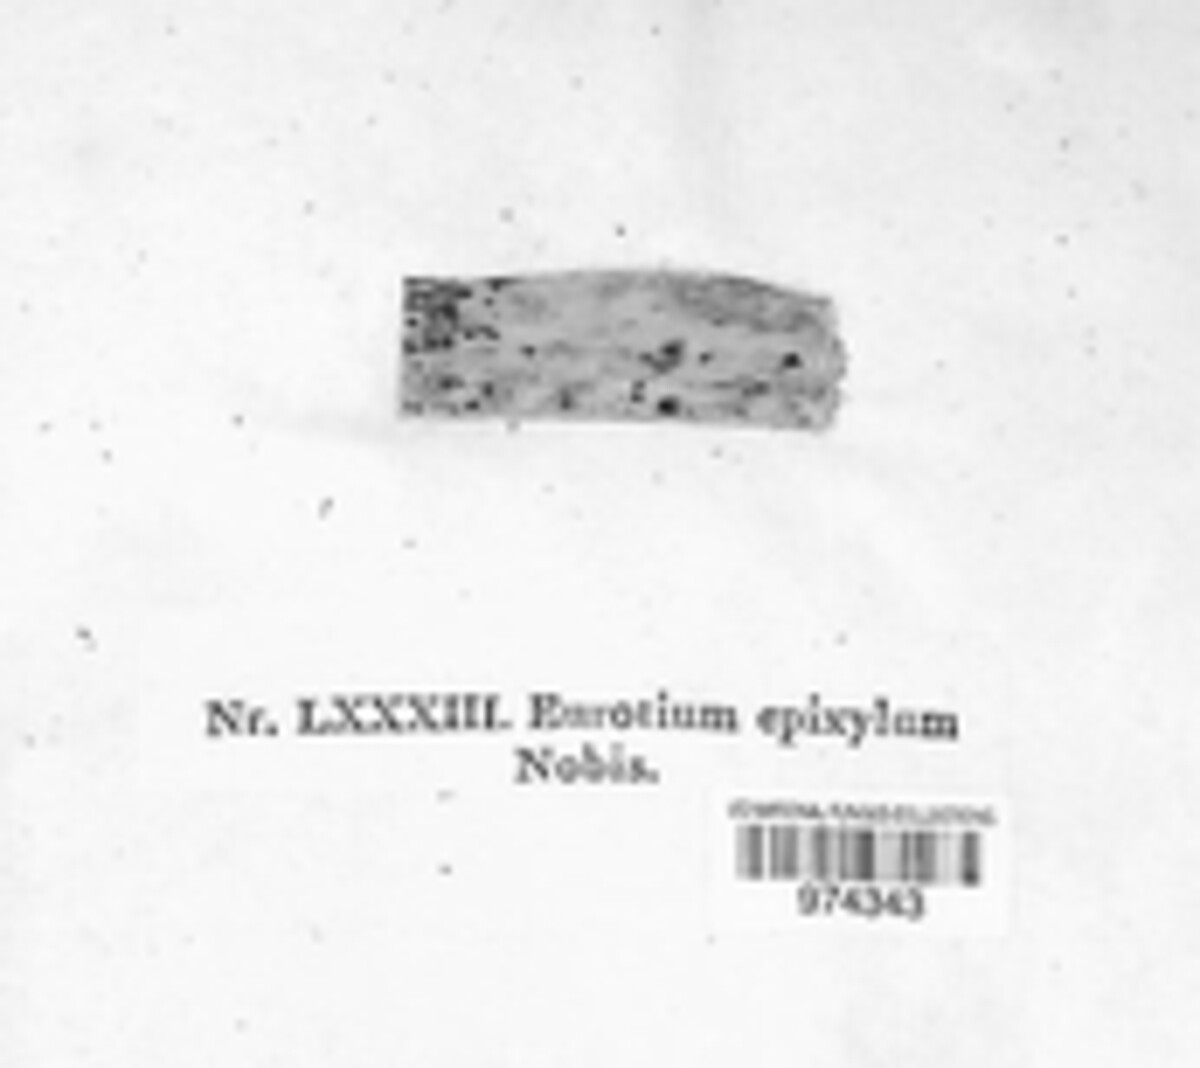 Eurotium epixylum image